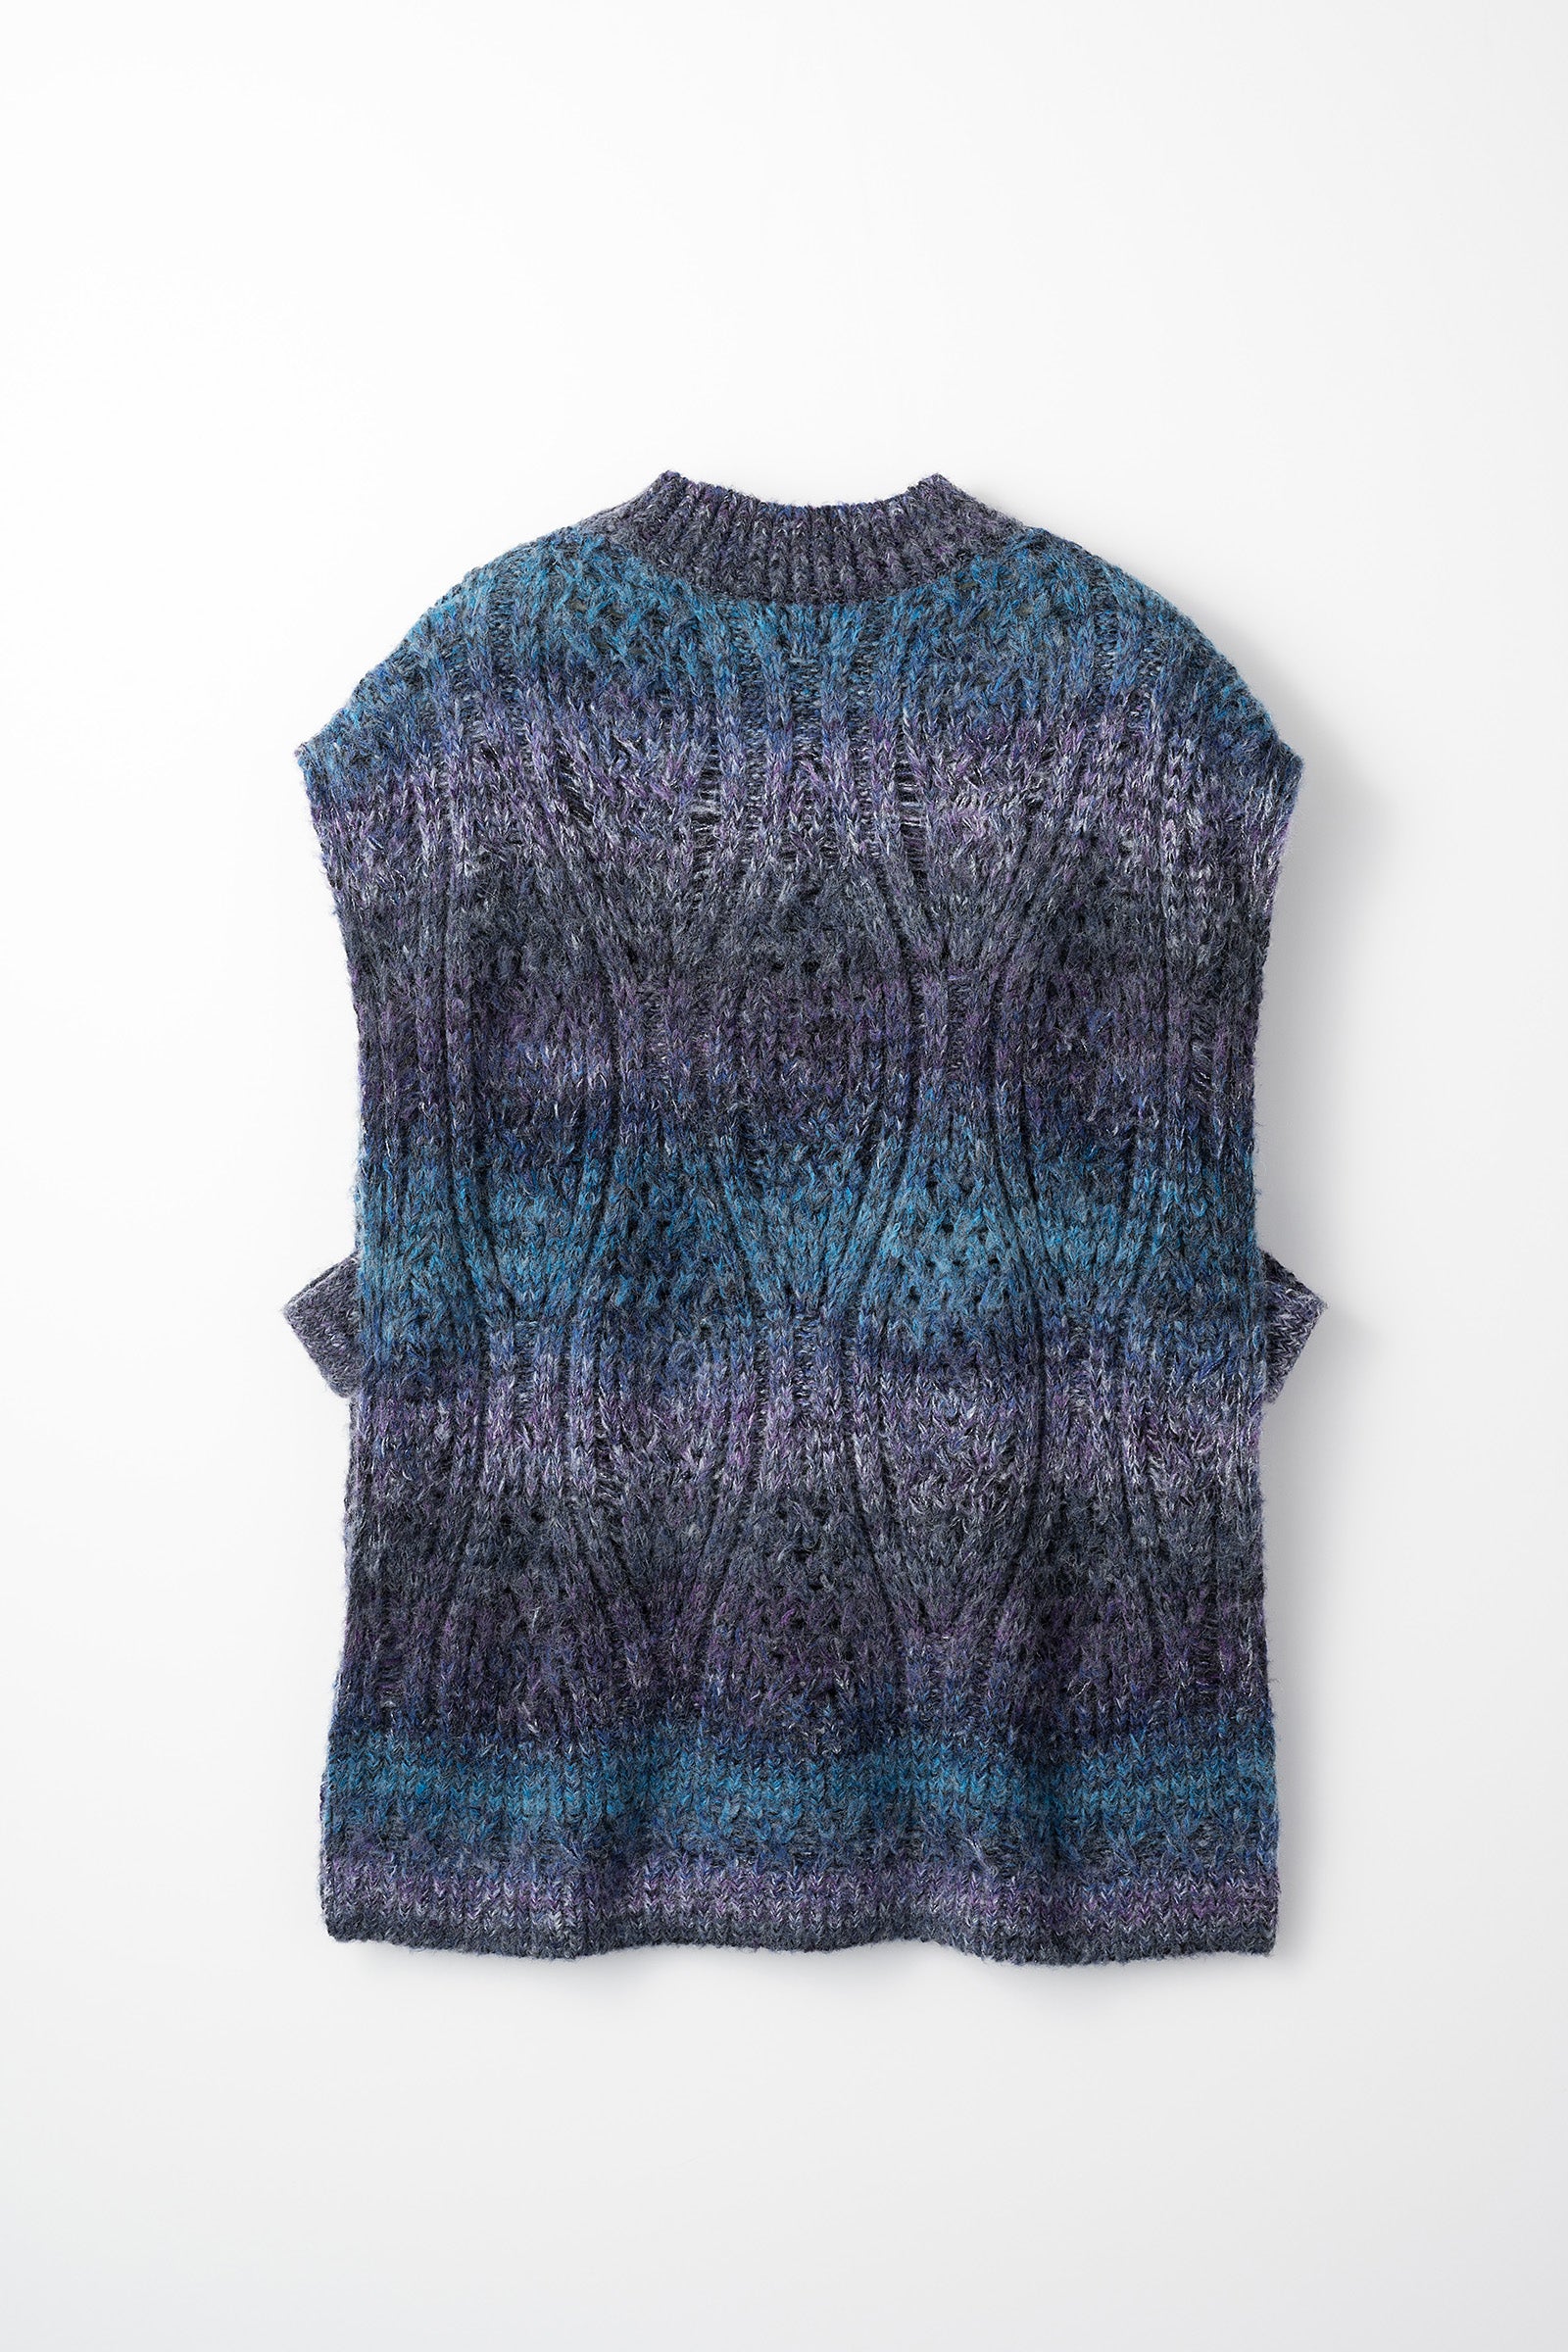 Hazy knit vest (Blue)